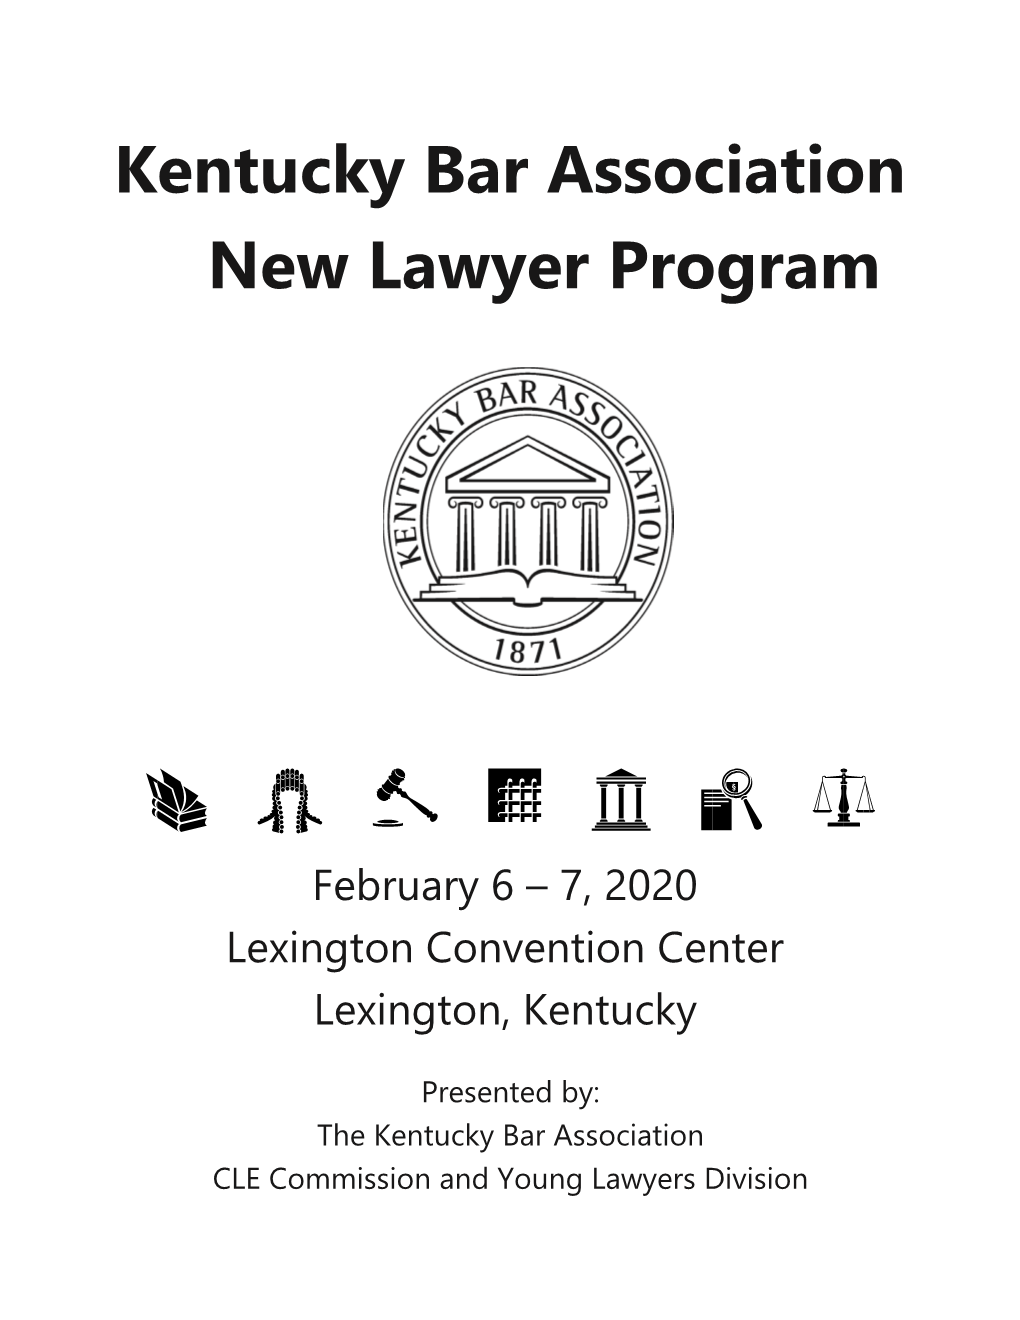 Kentucky Bar Association New Lawyer Program